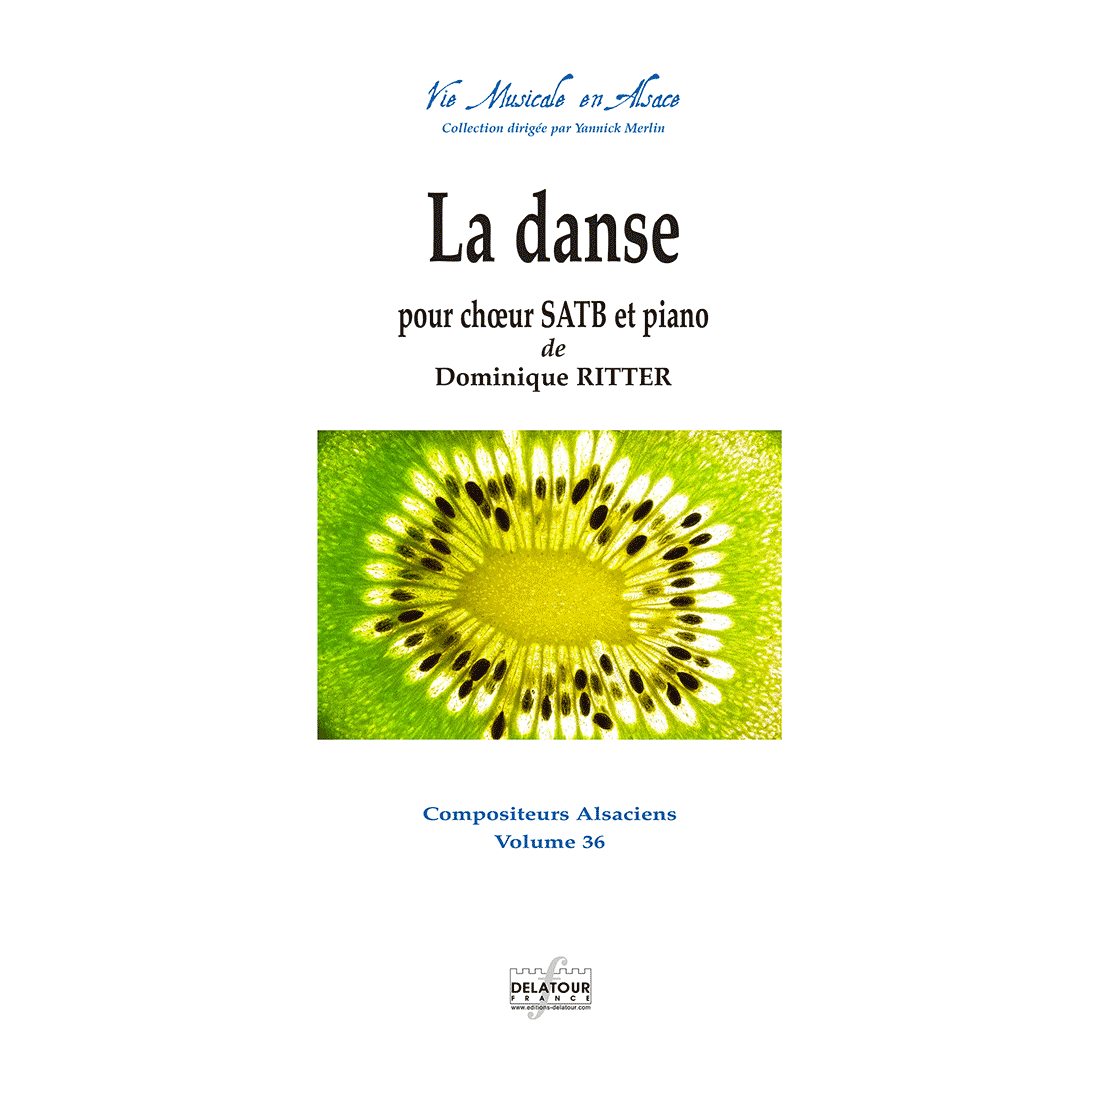 La danse for mixed choir SATB and piano